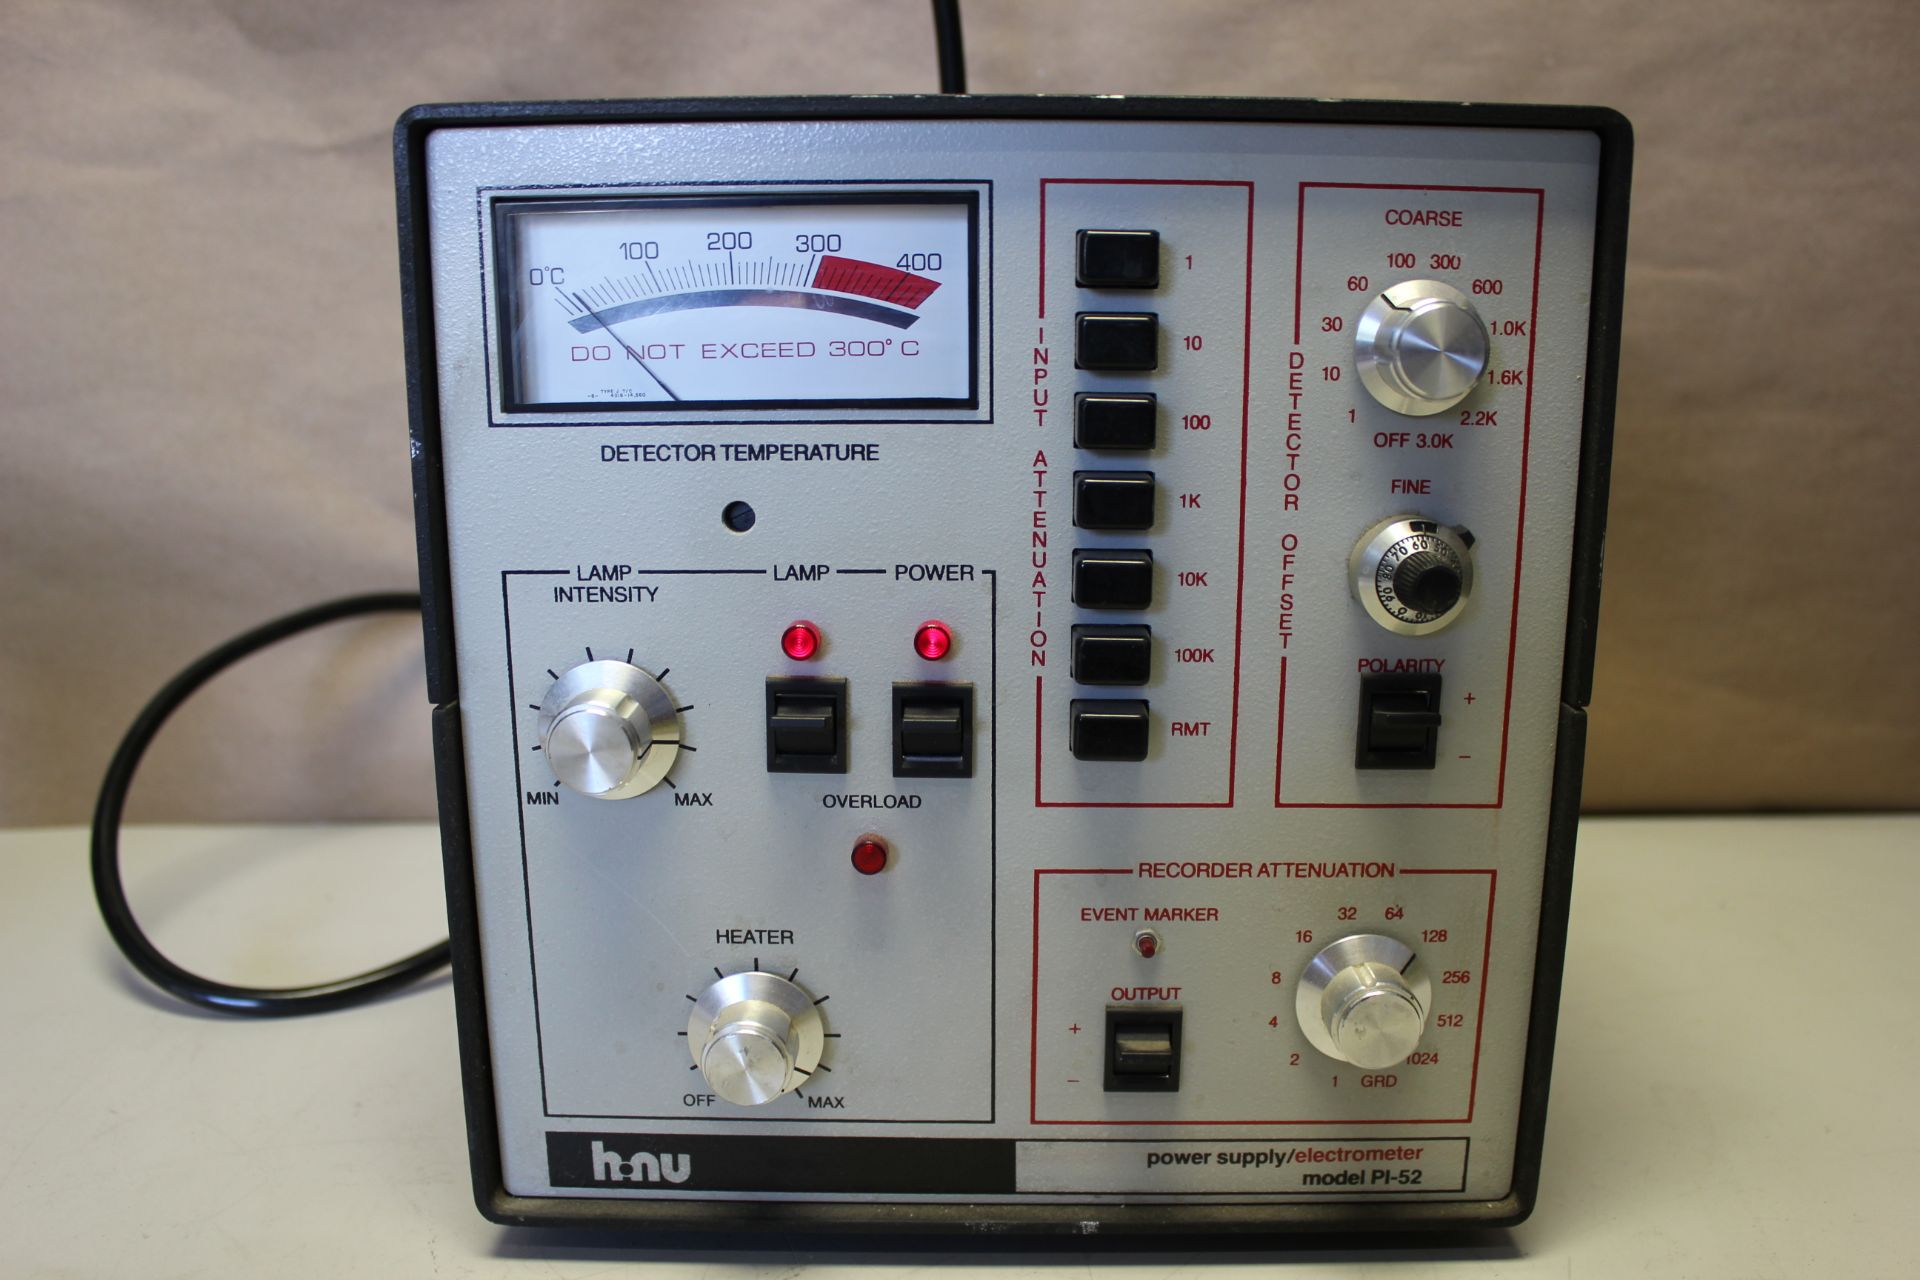 NHU POWER SUPPLY/ ELECTROMETER MODEL PLP-52 - Image 4 of 7